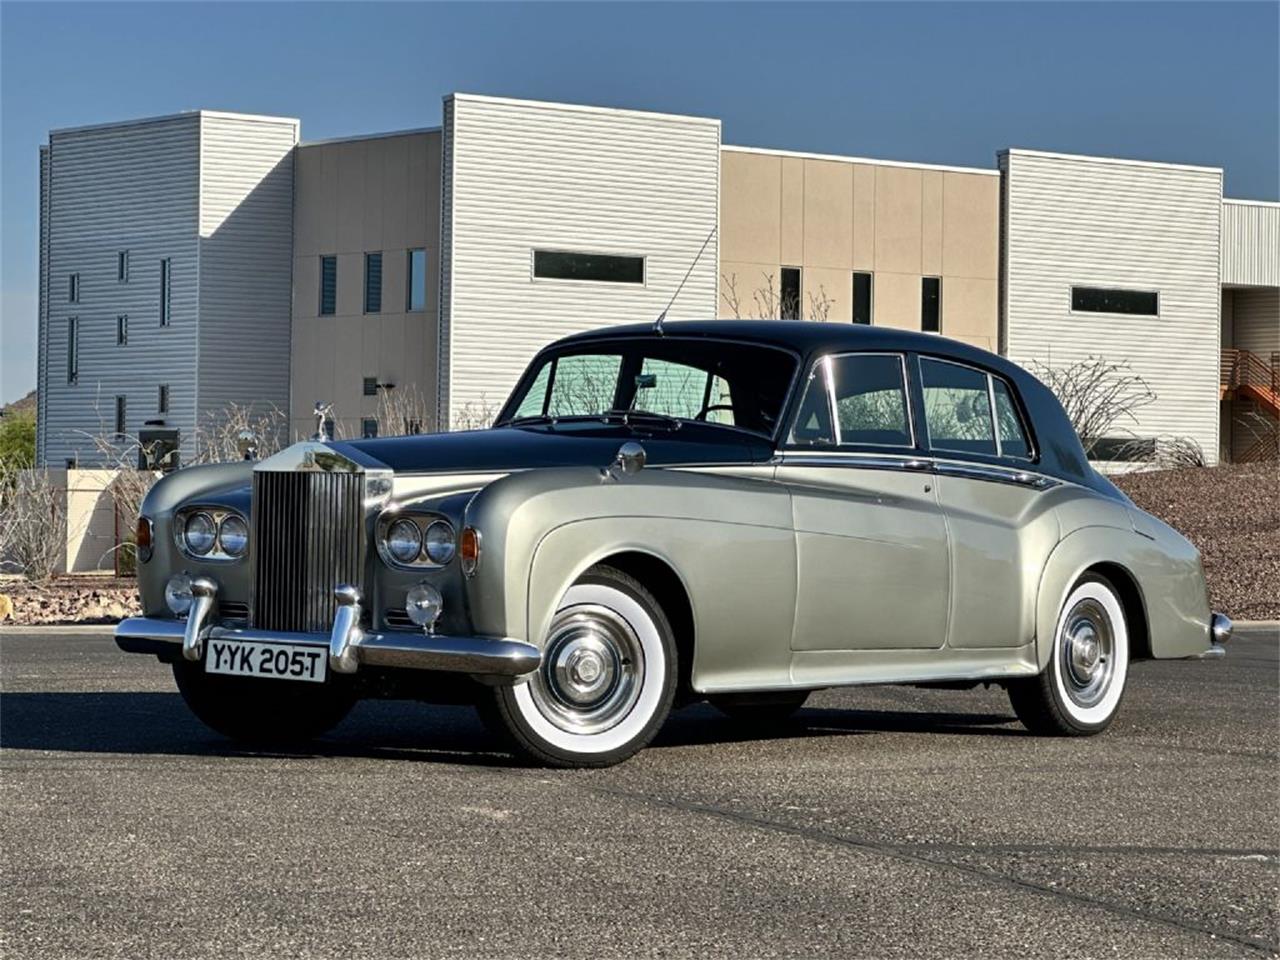 For Sale: 1963 Rolls-Royce Silver Cloud III in Phoenix, Arizona for sale in Phoenix, AZ